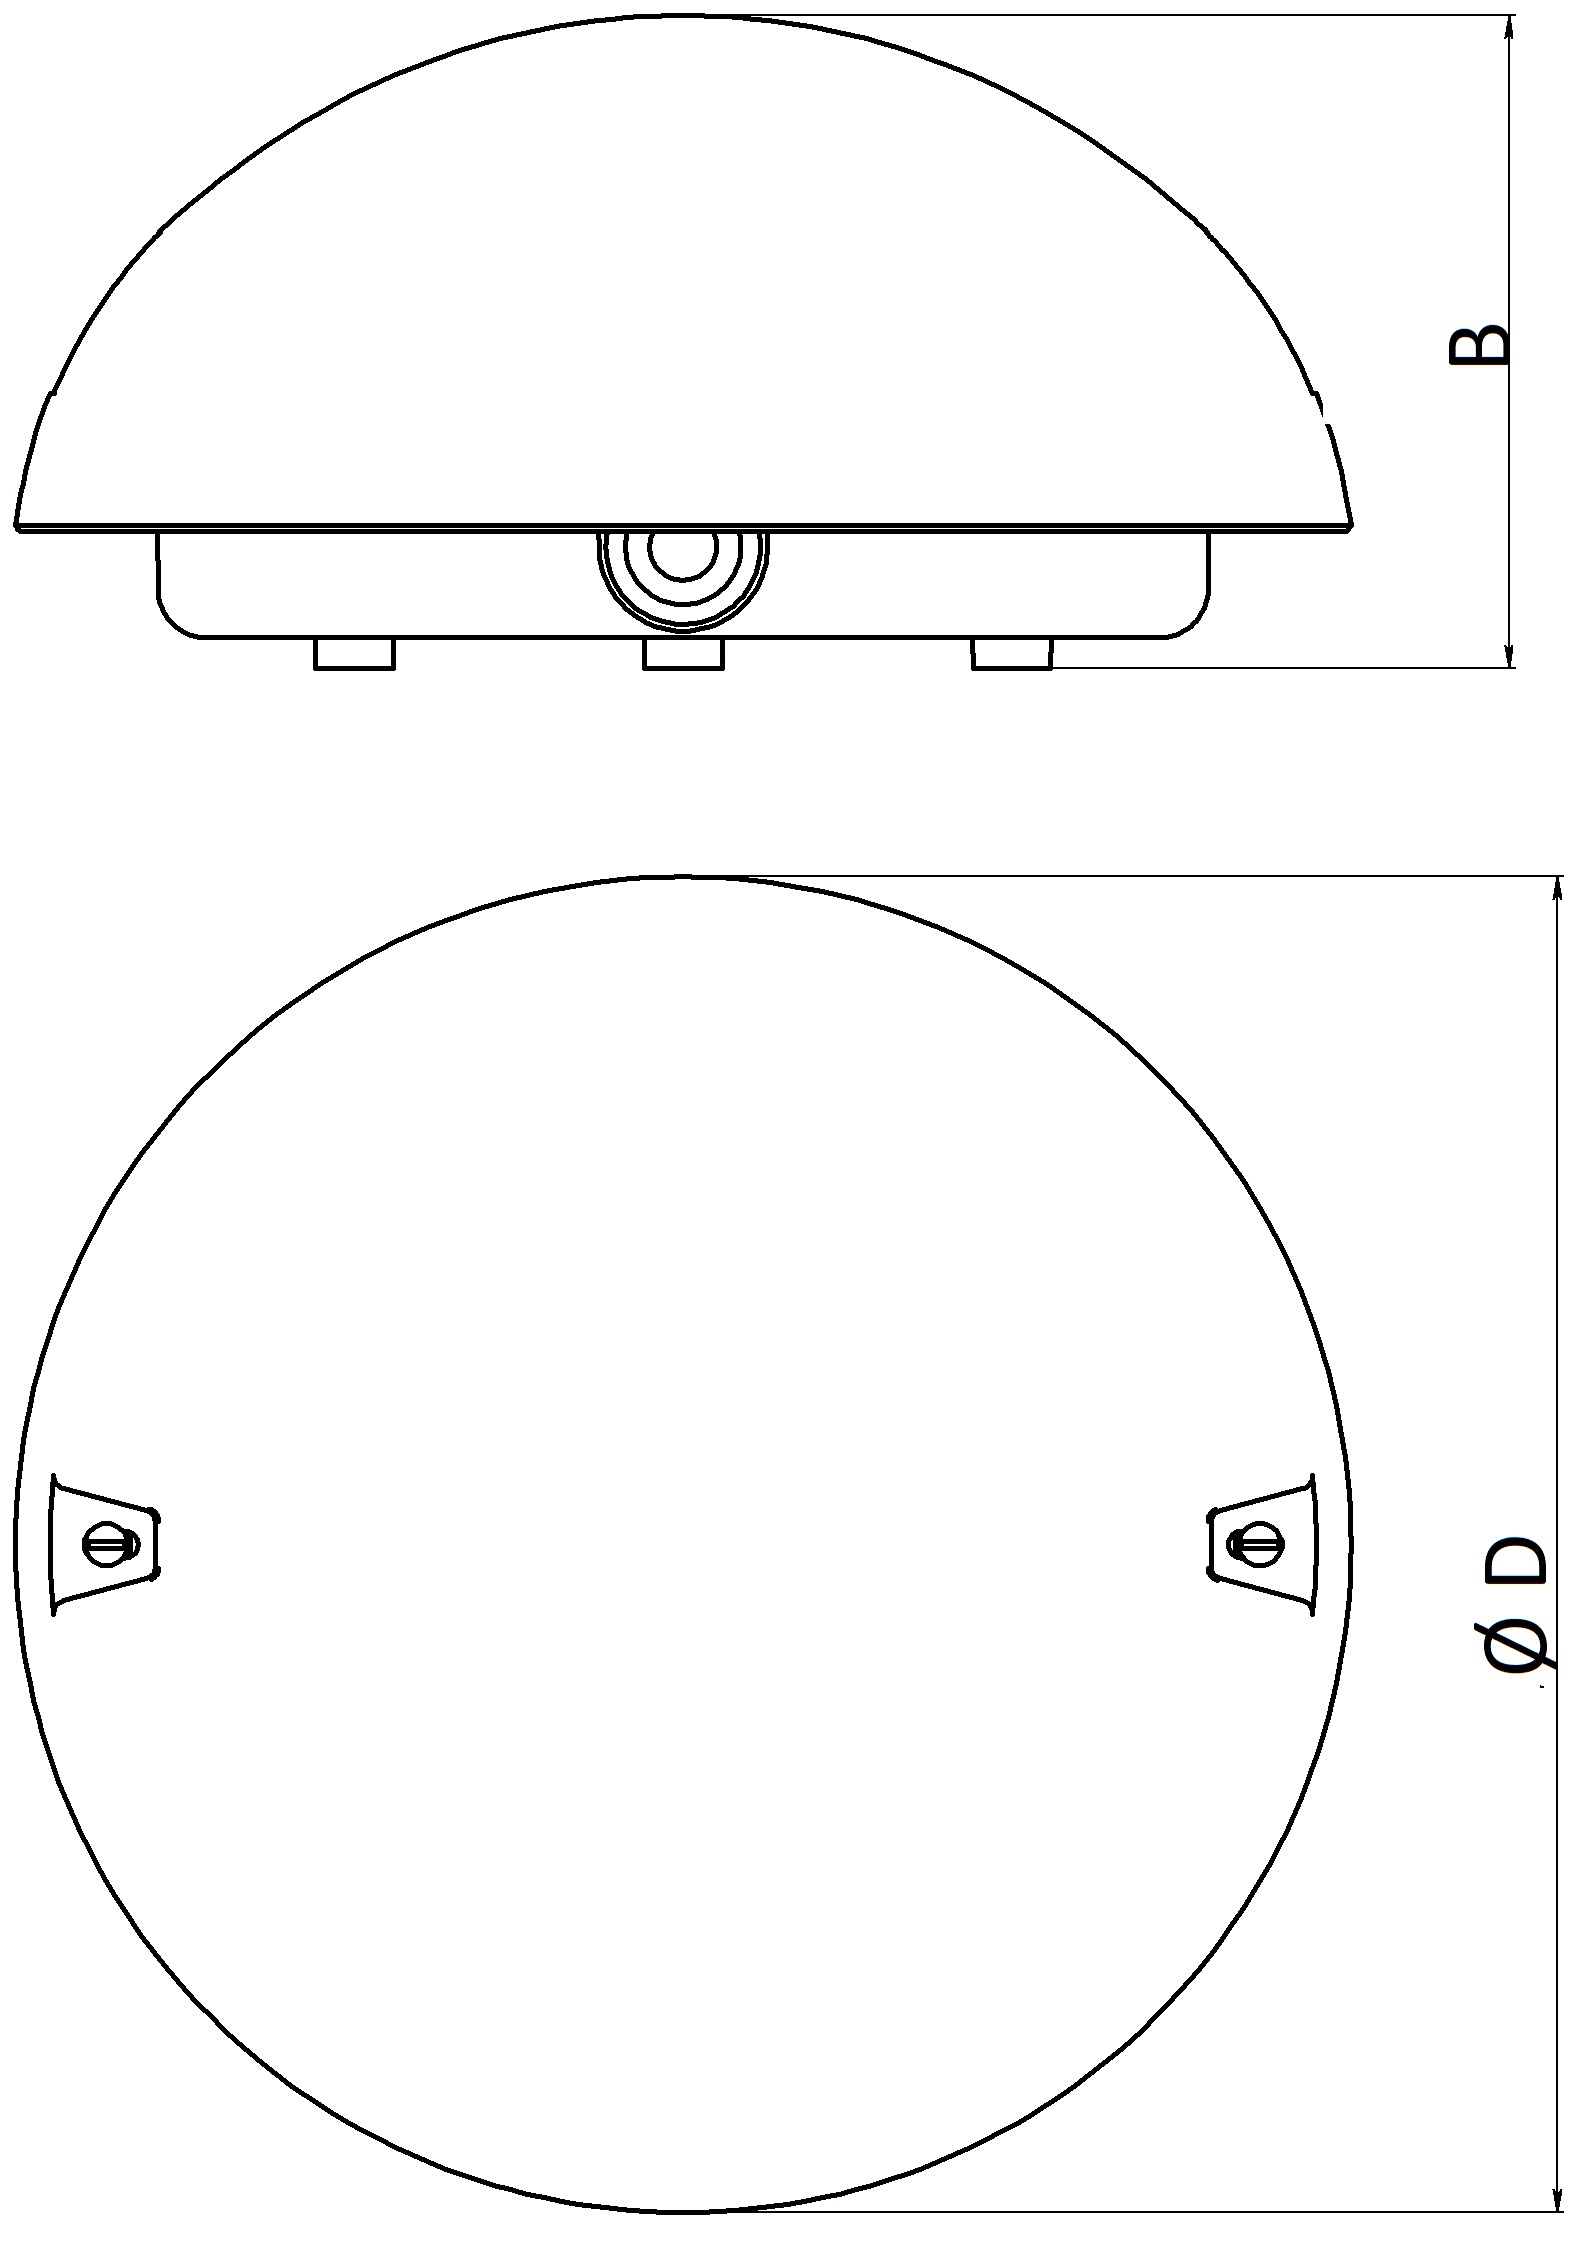 Светильник промышленный ЭРА Сириус 60Вт, цоколь E27, IP54, антивандальный, форма - круг, цвет - белый